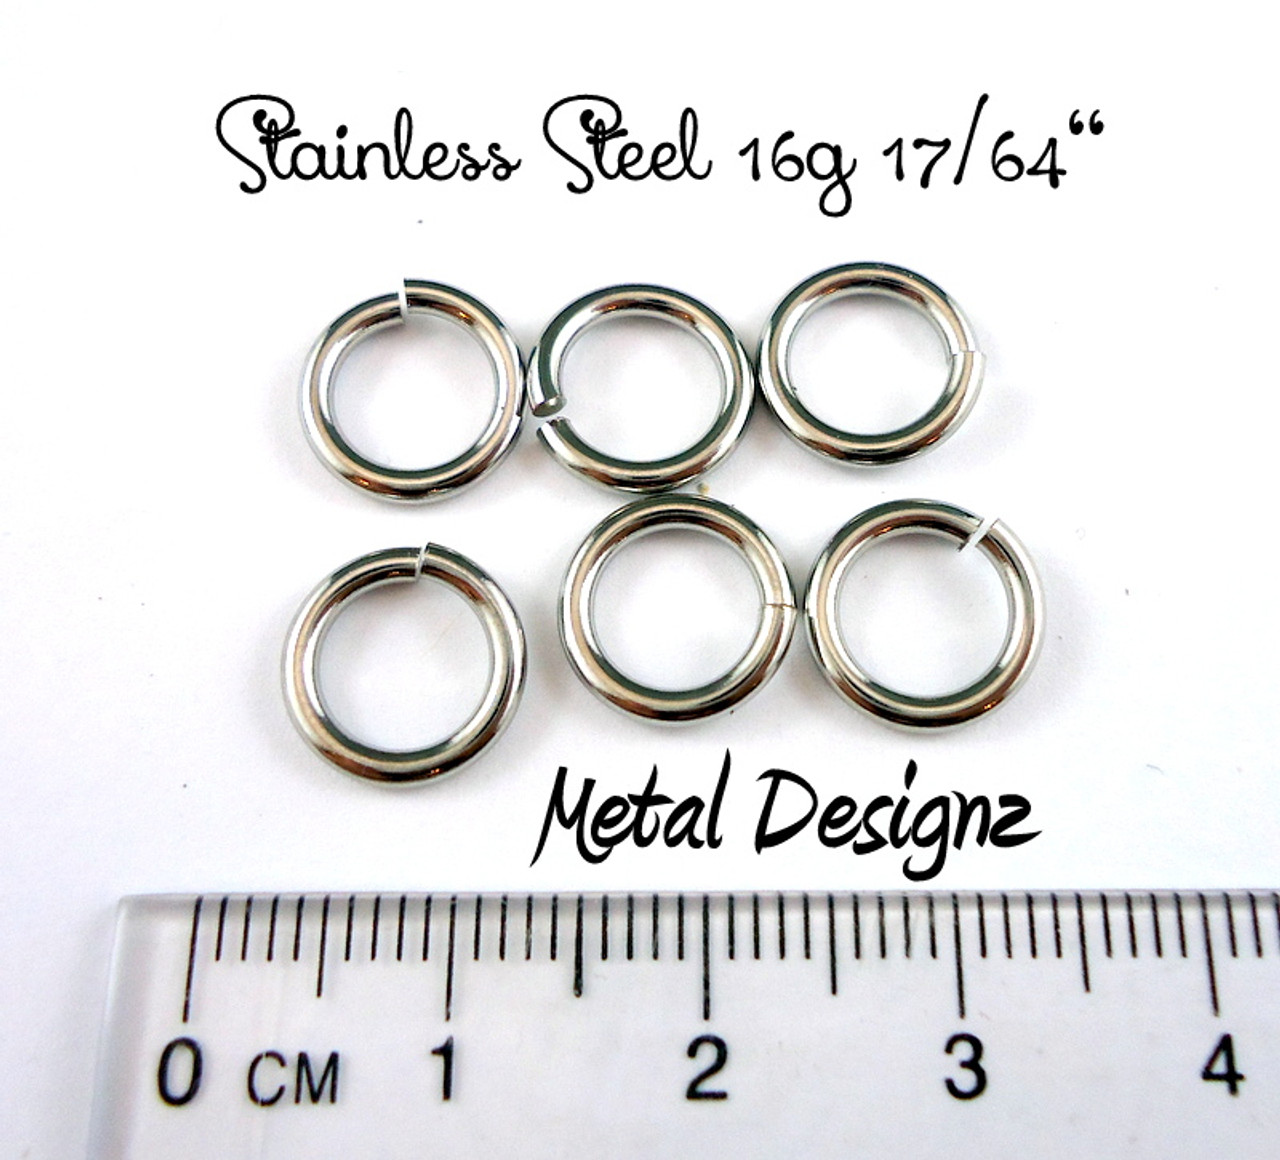 Square Wire Stainless Steel Jump Rings 16 gauge 3/8 ID - Metal